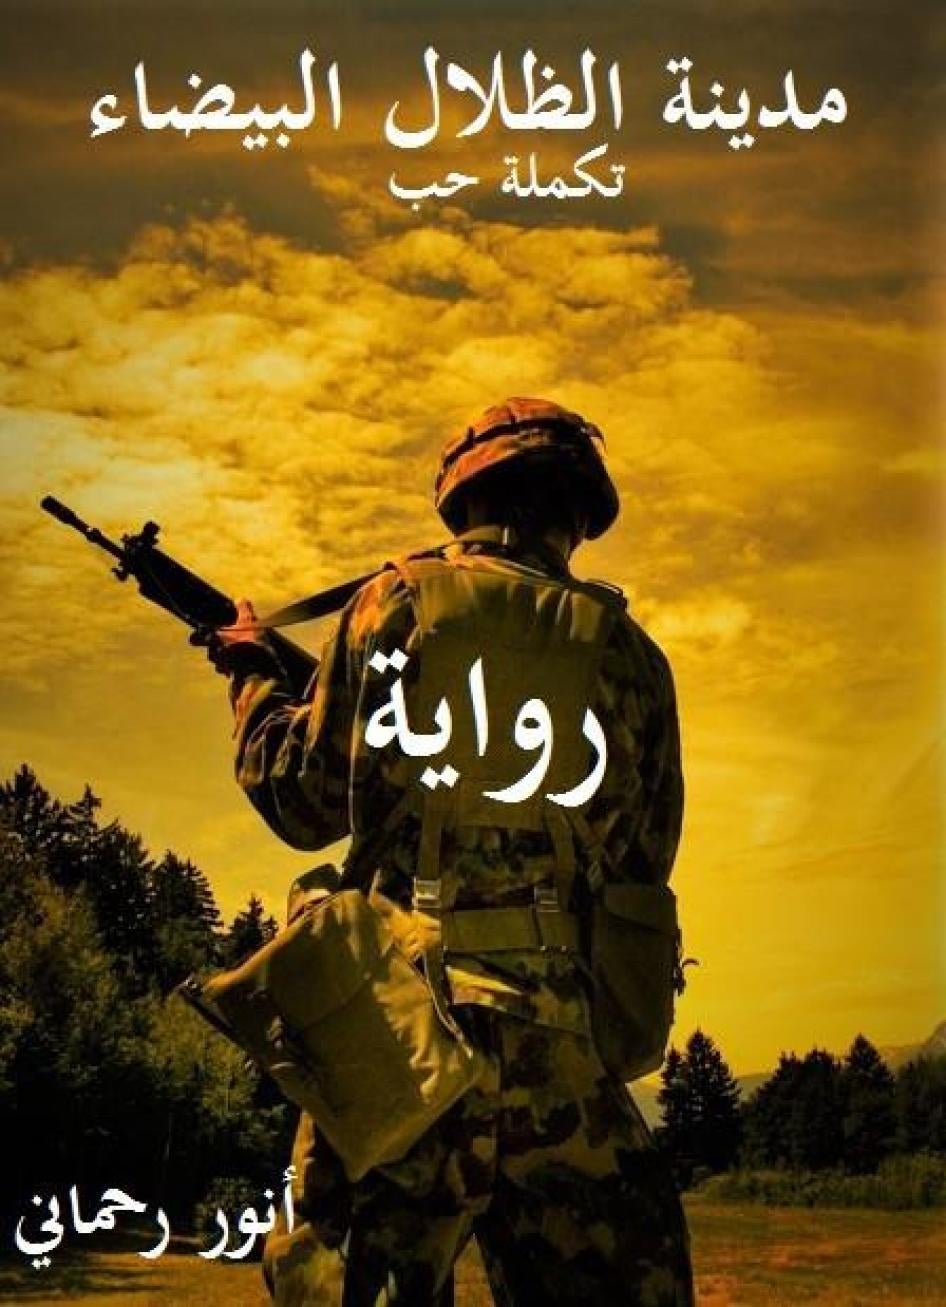 Couverture du roman de l’écrivain algérien Anouar Rahmani, « La ville des ombres blanches », publié sur Internet. 